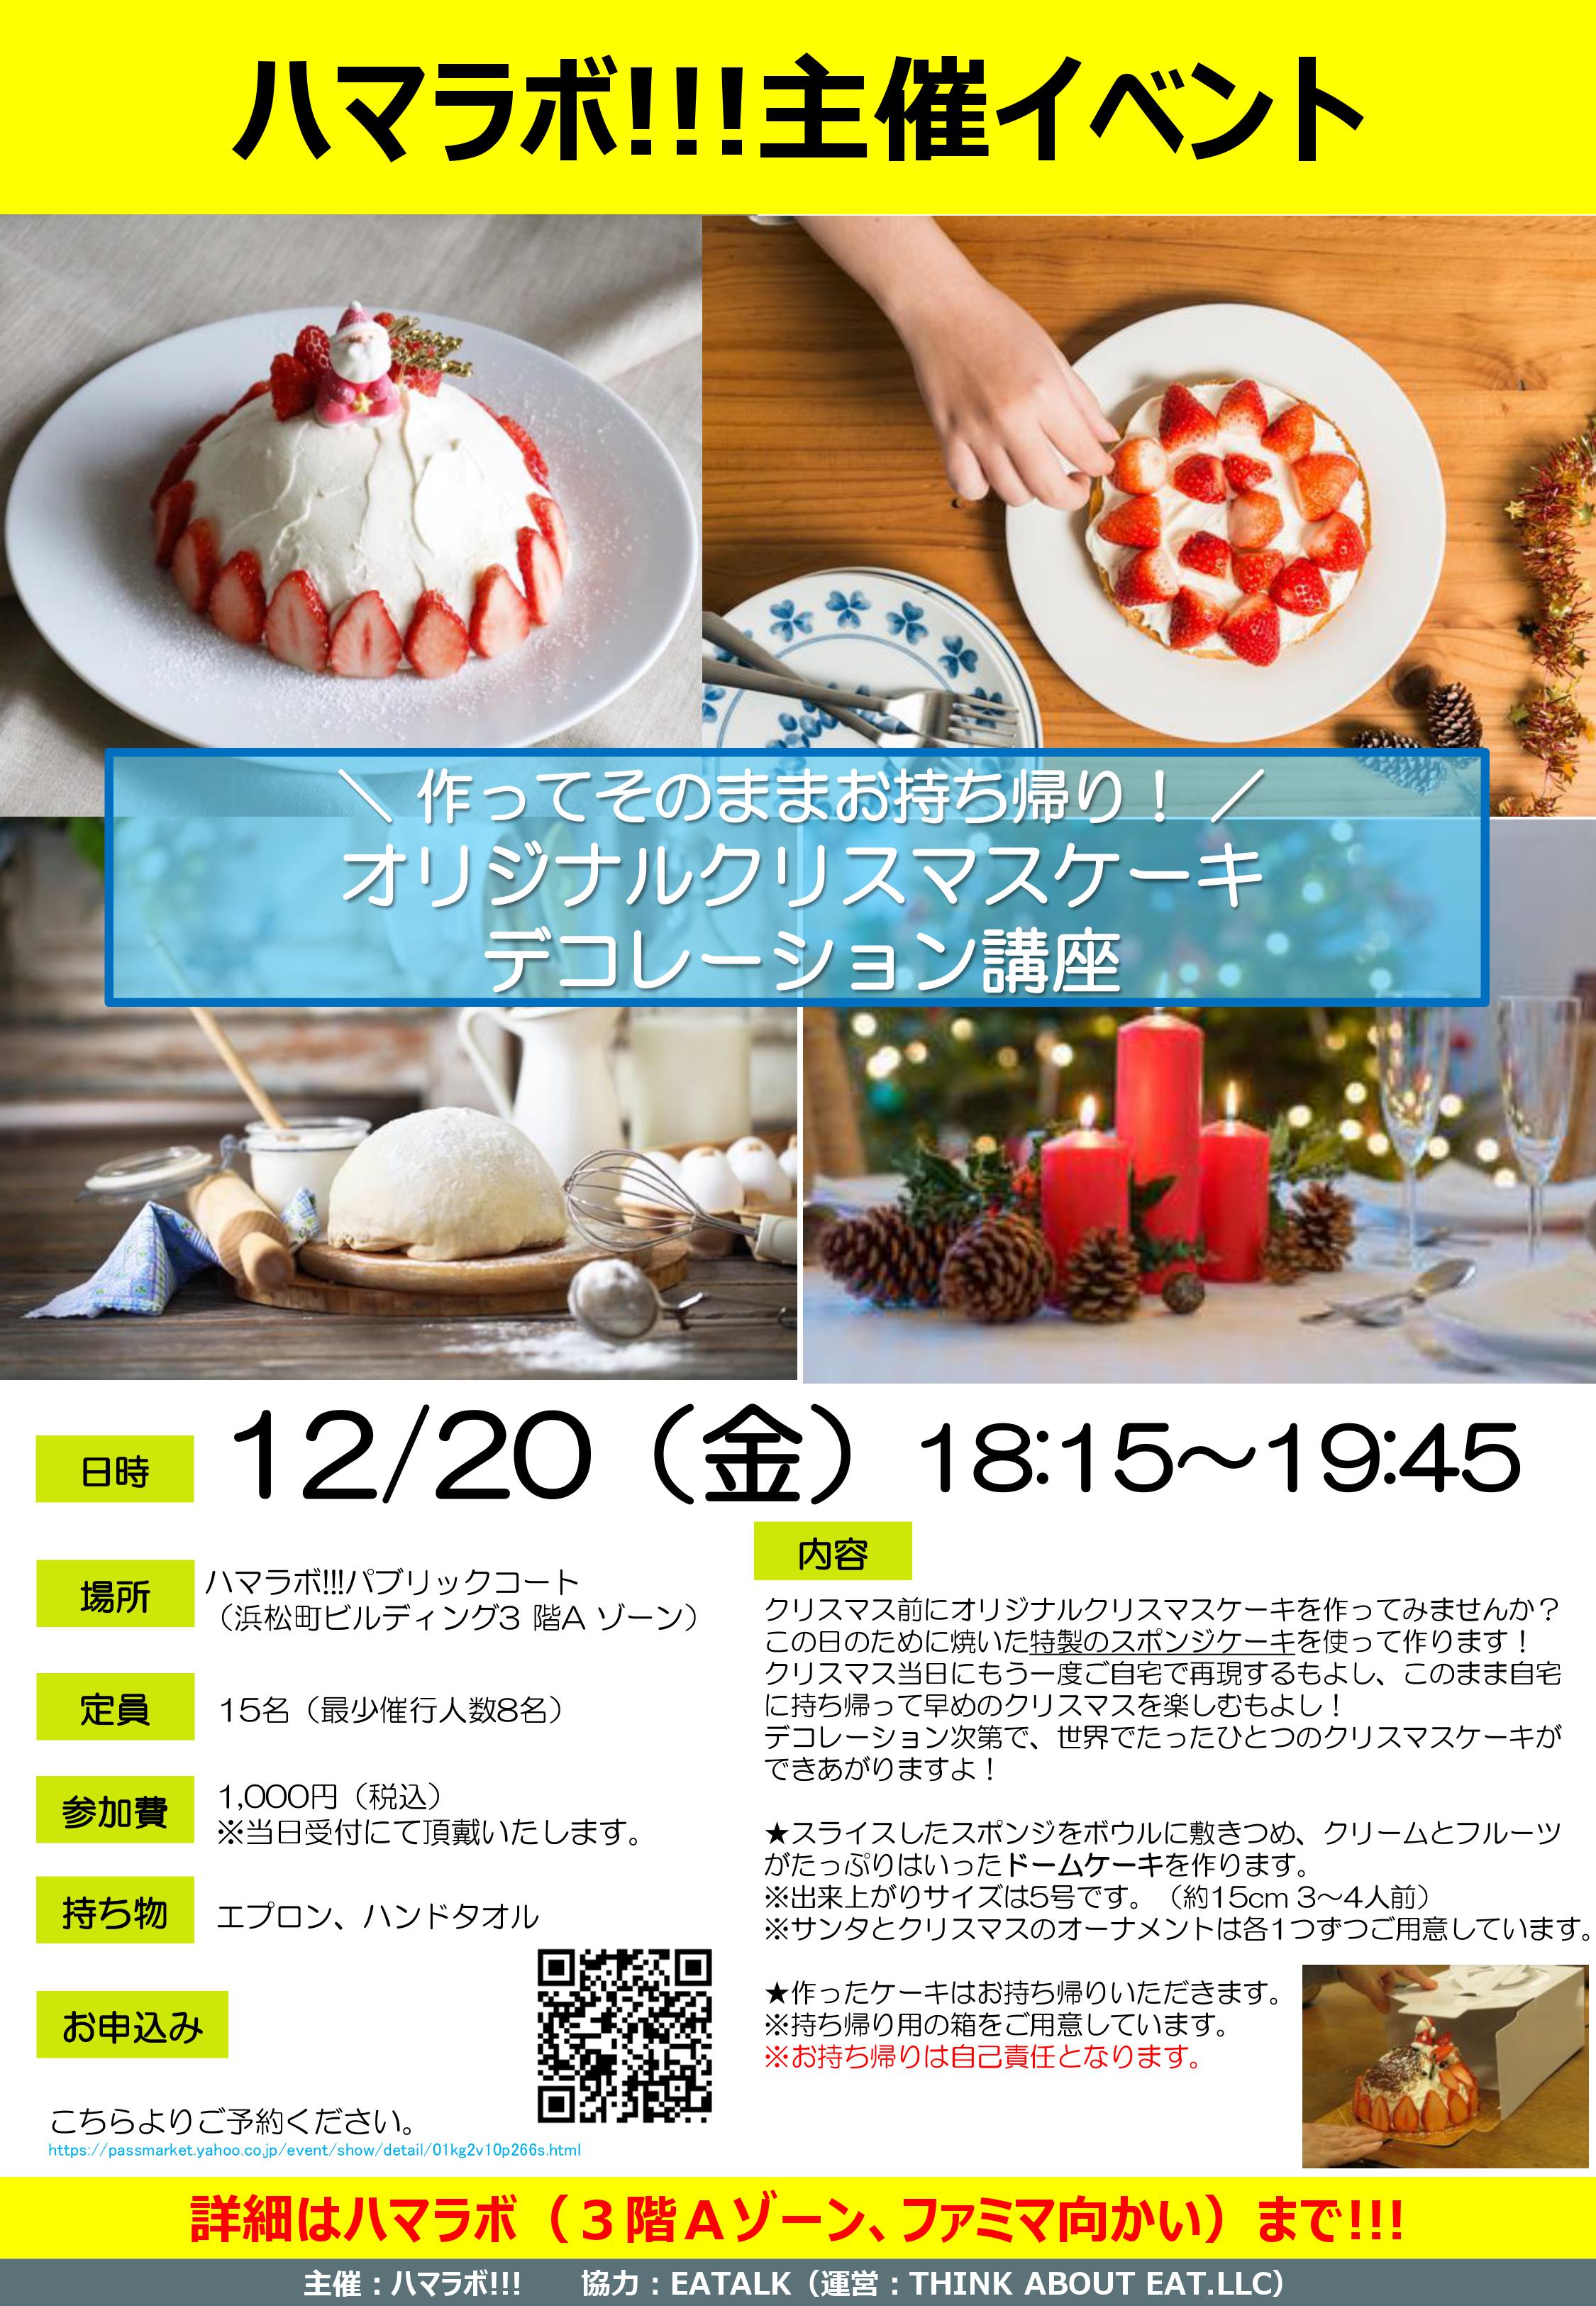 12 金 オリジナルクリスマスケーキデコレーション講座 Hama Lab 浜松町研究所